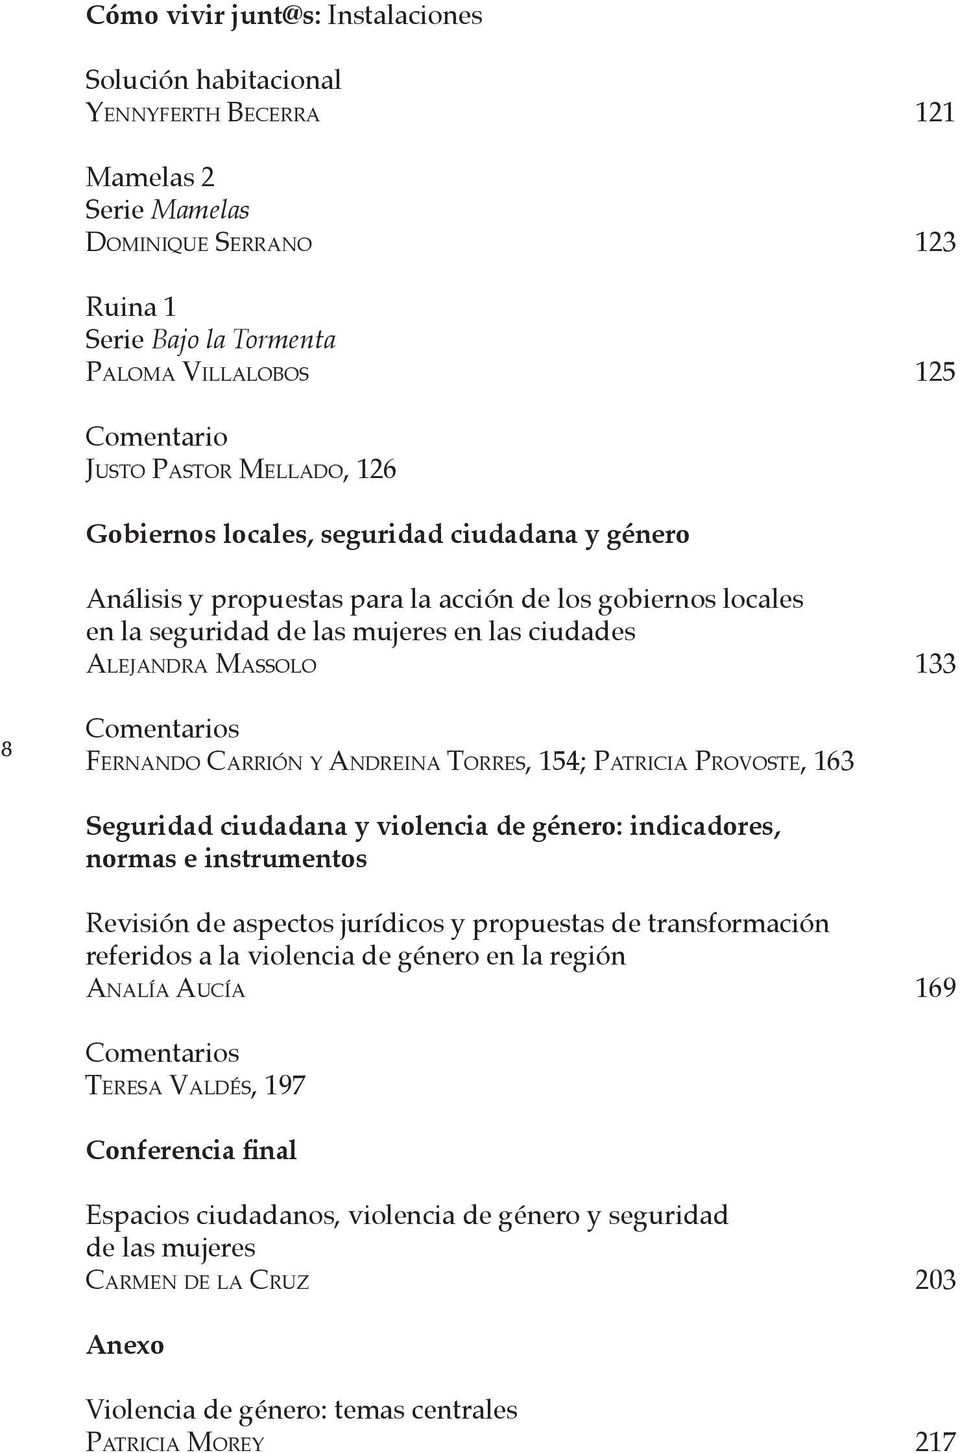 8 Comentarios FERNANDO CARRIÓN Y ANDREINA TORRES, 154; PATRICIA PROVOSTE, 163 Seguridad ciudadana y violencia de género: indicadores, normas e instrumentos Revisión de aspectos jurídicos y propuestas